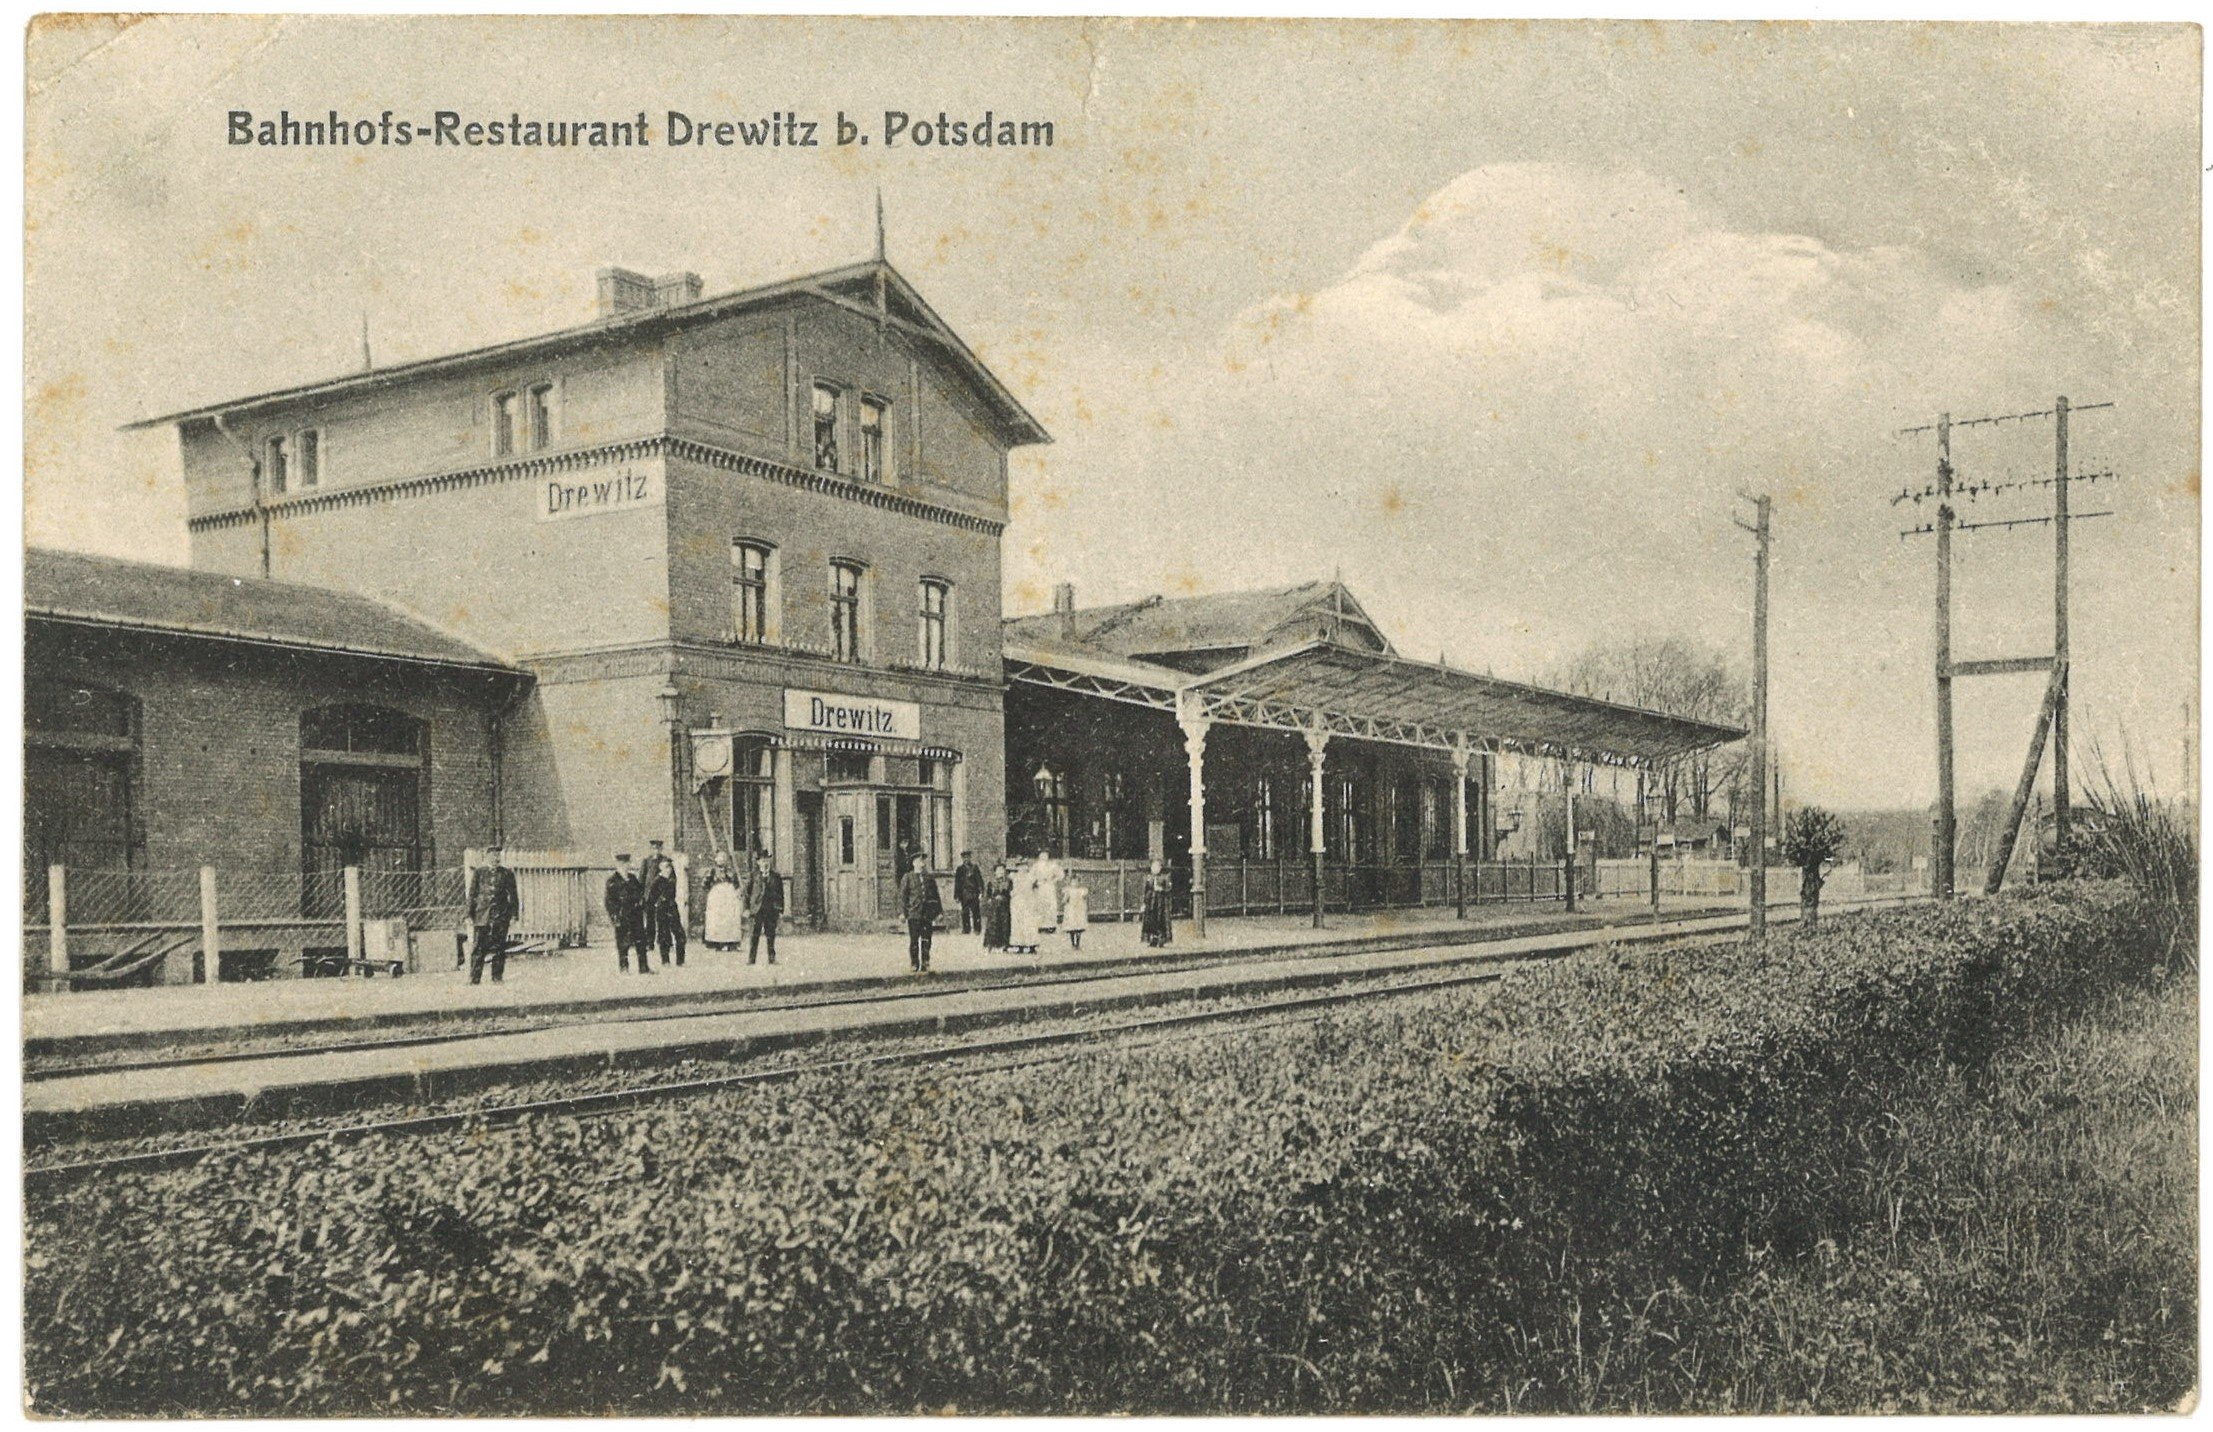 Potsdam-Drewitz: Bahnhof (Landesgeschichtliche Vereinigung für die Mark Brandenburg e.V., Archiv CC BY)